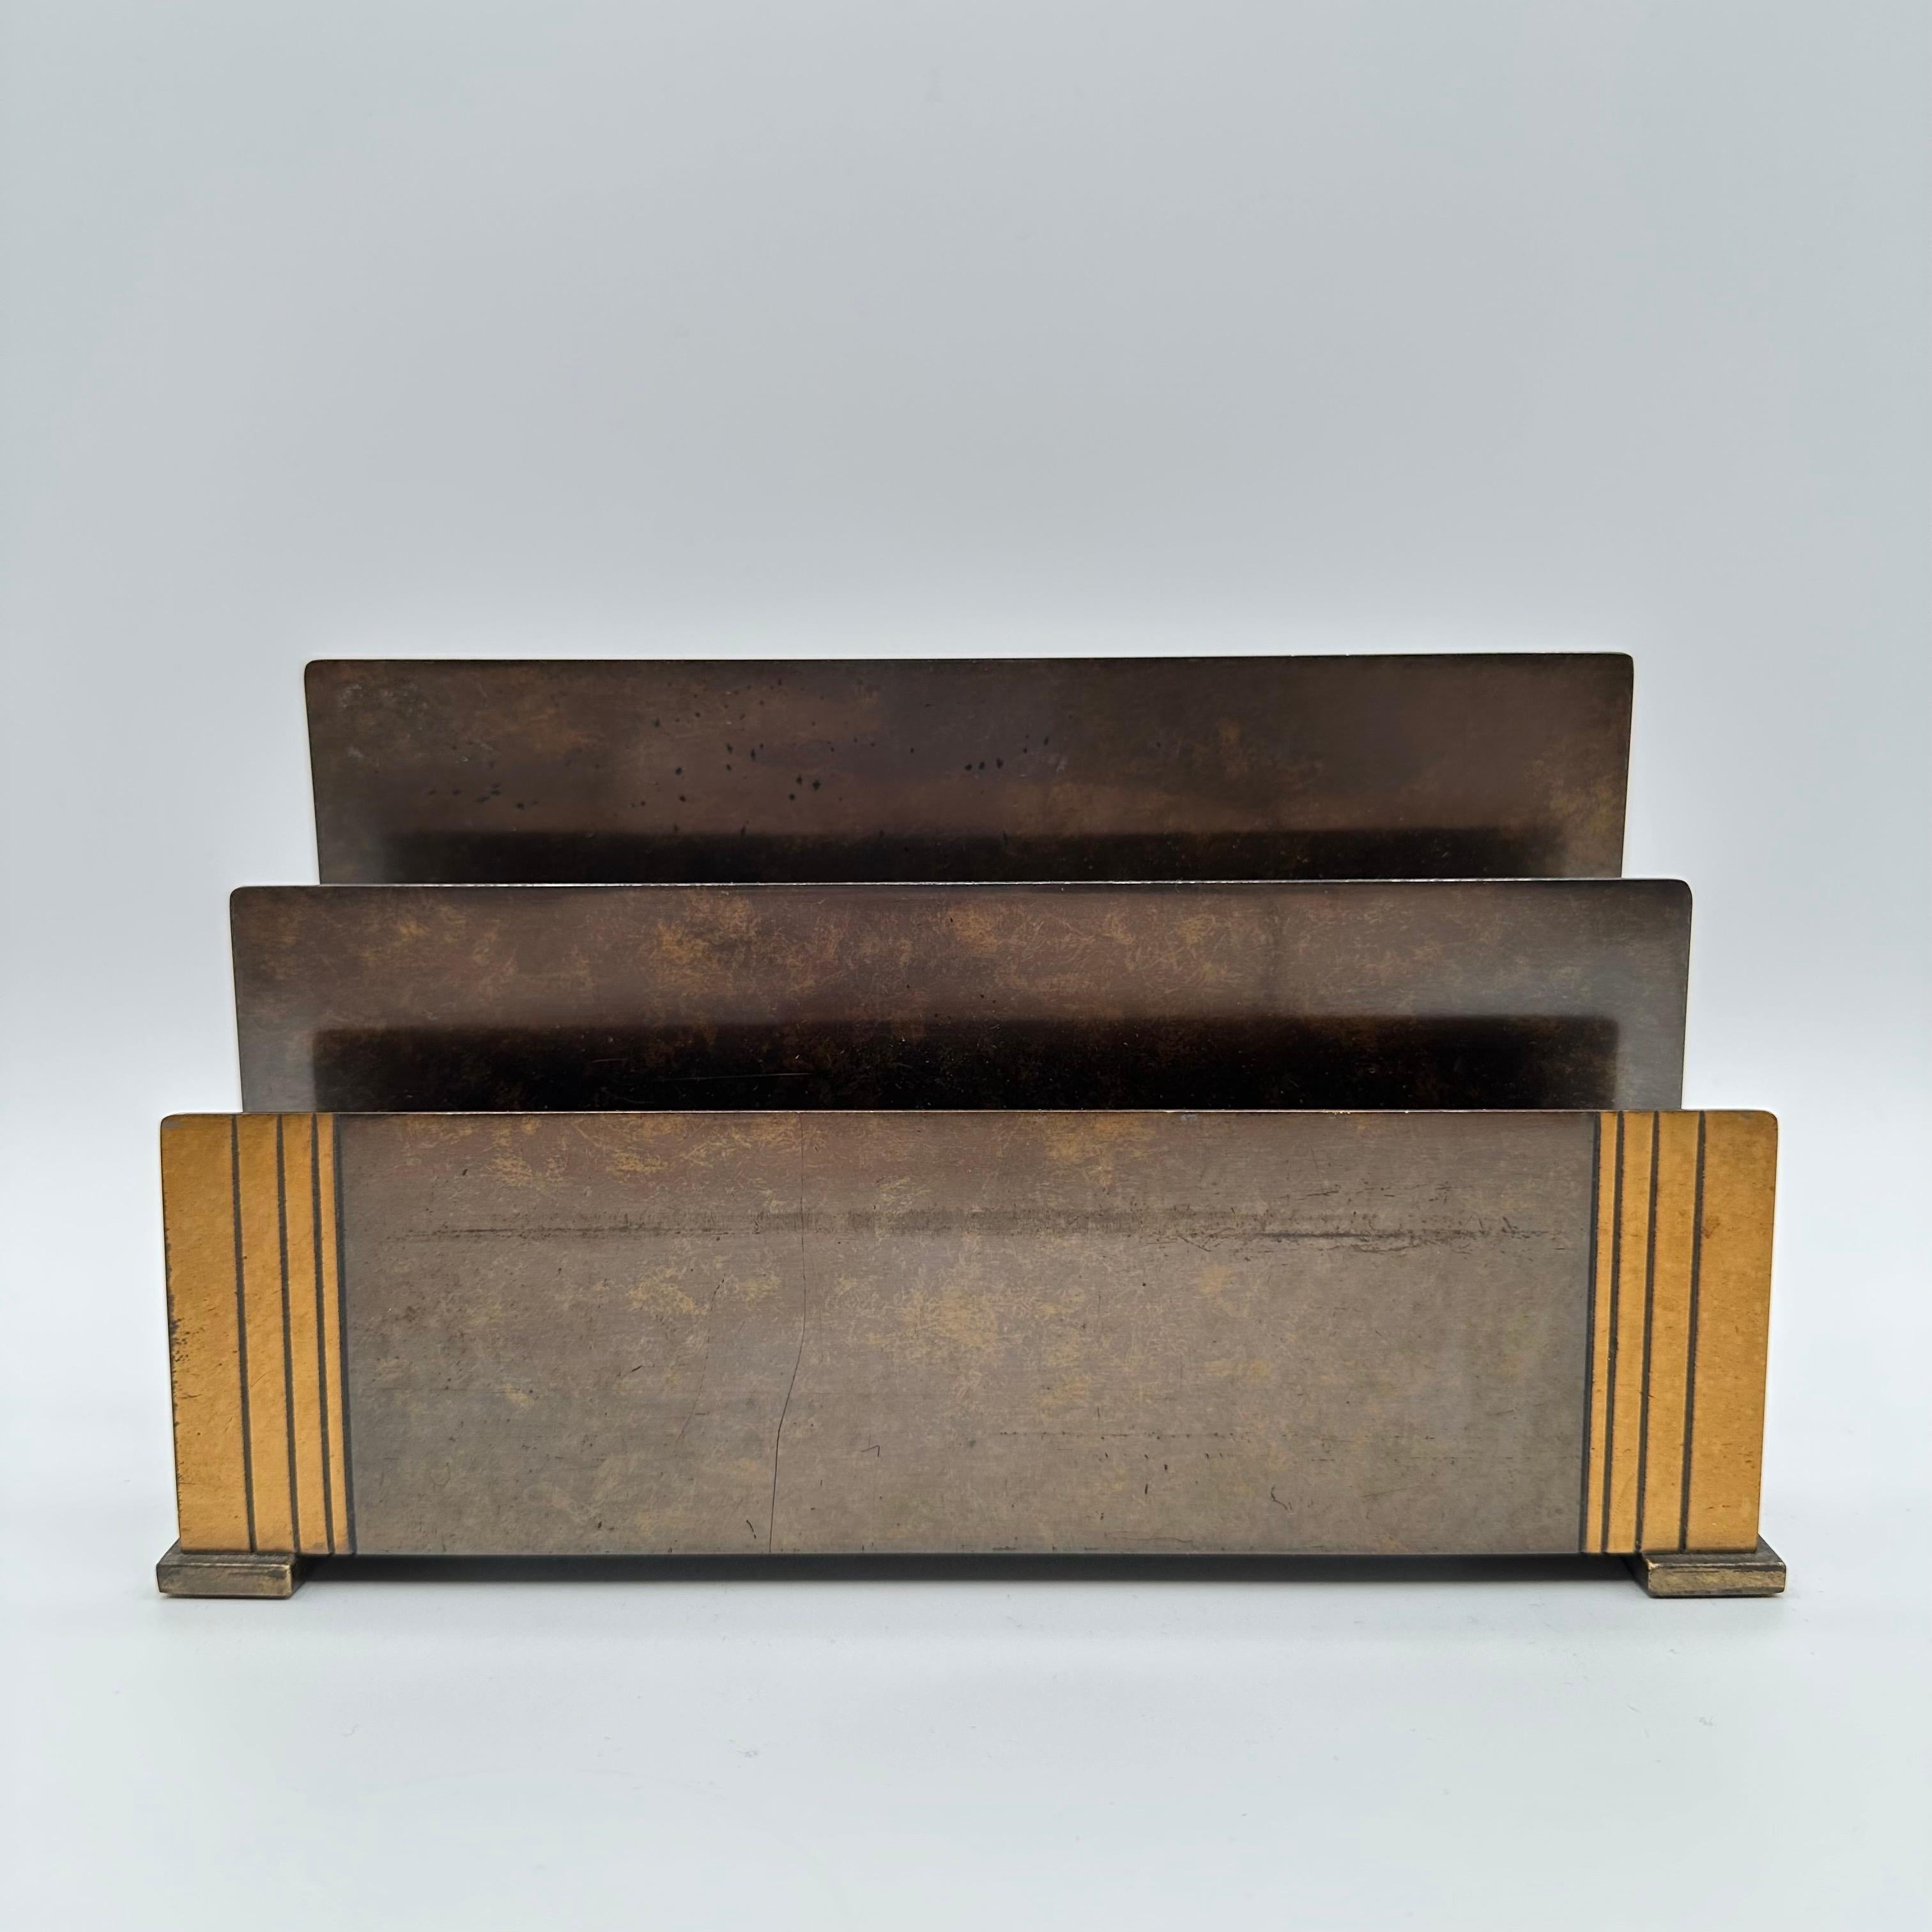 Vintage Art Deco Briefhalter von Silver Crest in einer schönen patinierten Bronze von verschiedenen Tönen. Mit einem linearen, geriffelten, säulenartigen Kontrastmotiv auf jeder Seite und großen rechteckigen, schlittenartigen Füßen. Auf der